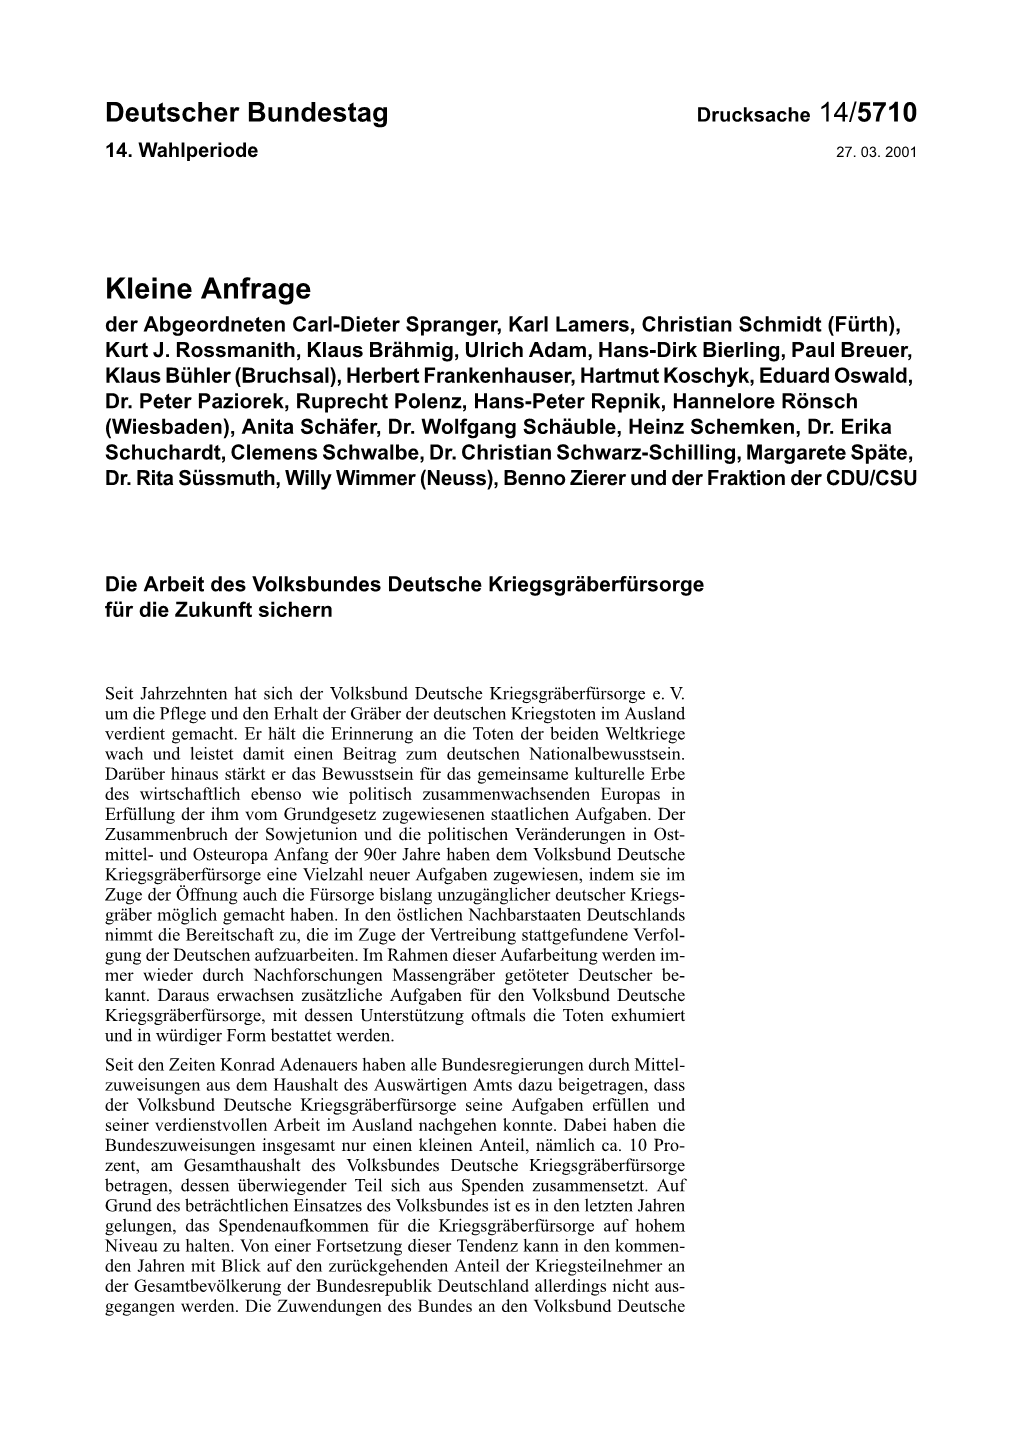 Kleine Anfrage Der Abgeordneten Carl-Dieter Spranger, Karl Lamers, Christian Schmidt (Fürth), Kurt J